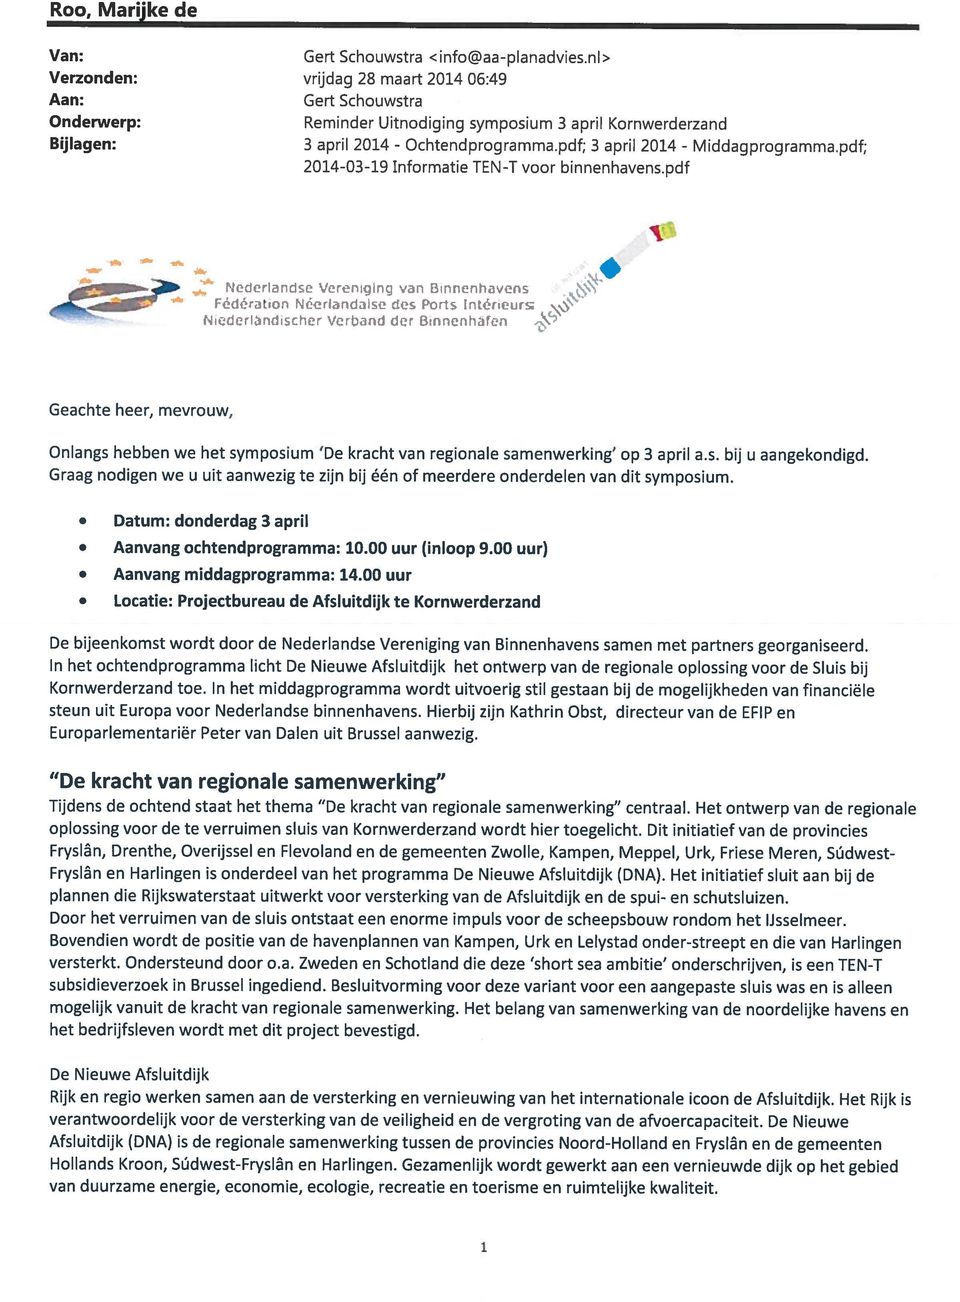 pdf; 2014-03-19 Informatie TEN-T voor binnenhavens.